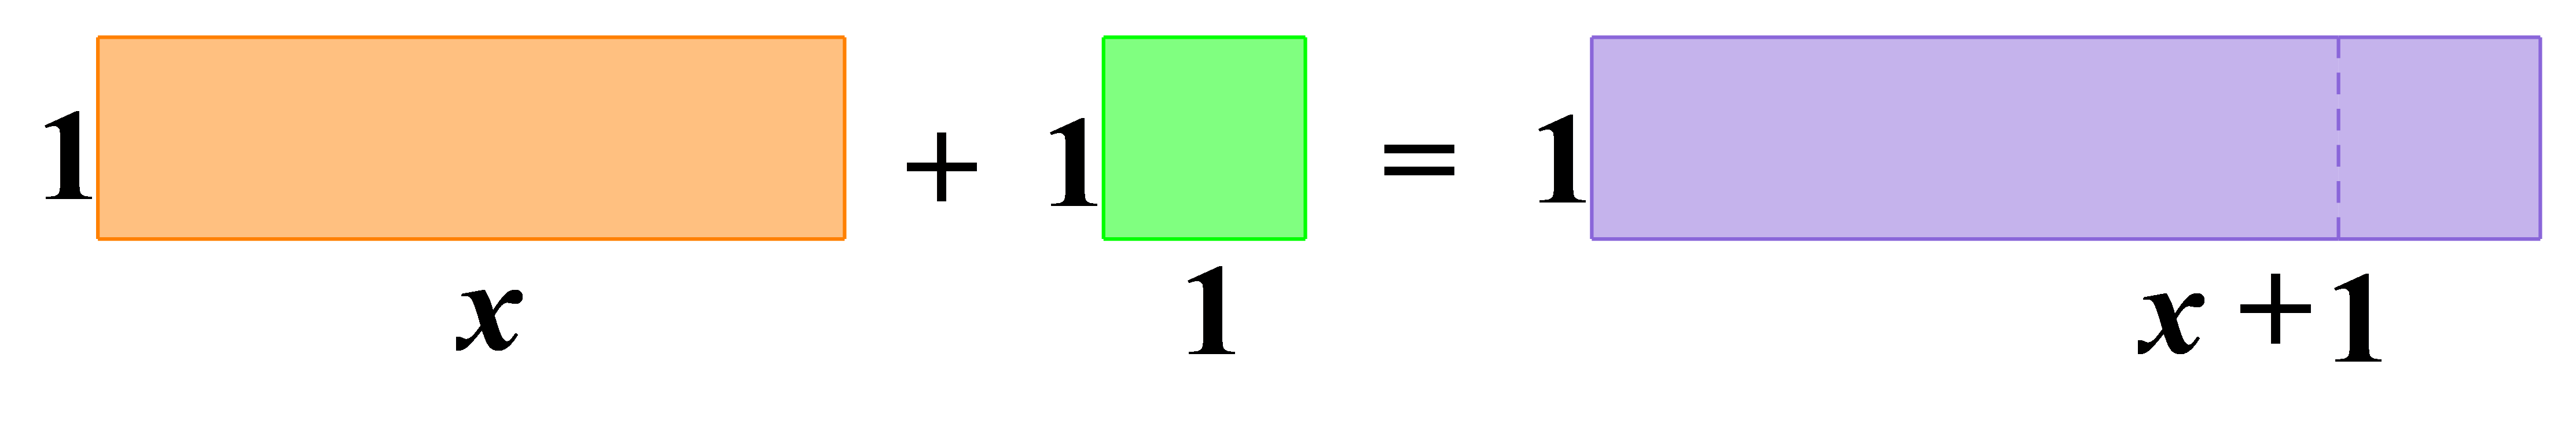 Na slici je prikaz pomoću pravokutnika algebarskog izraza x+1.